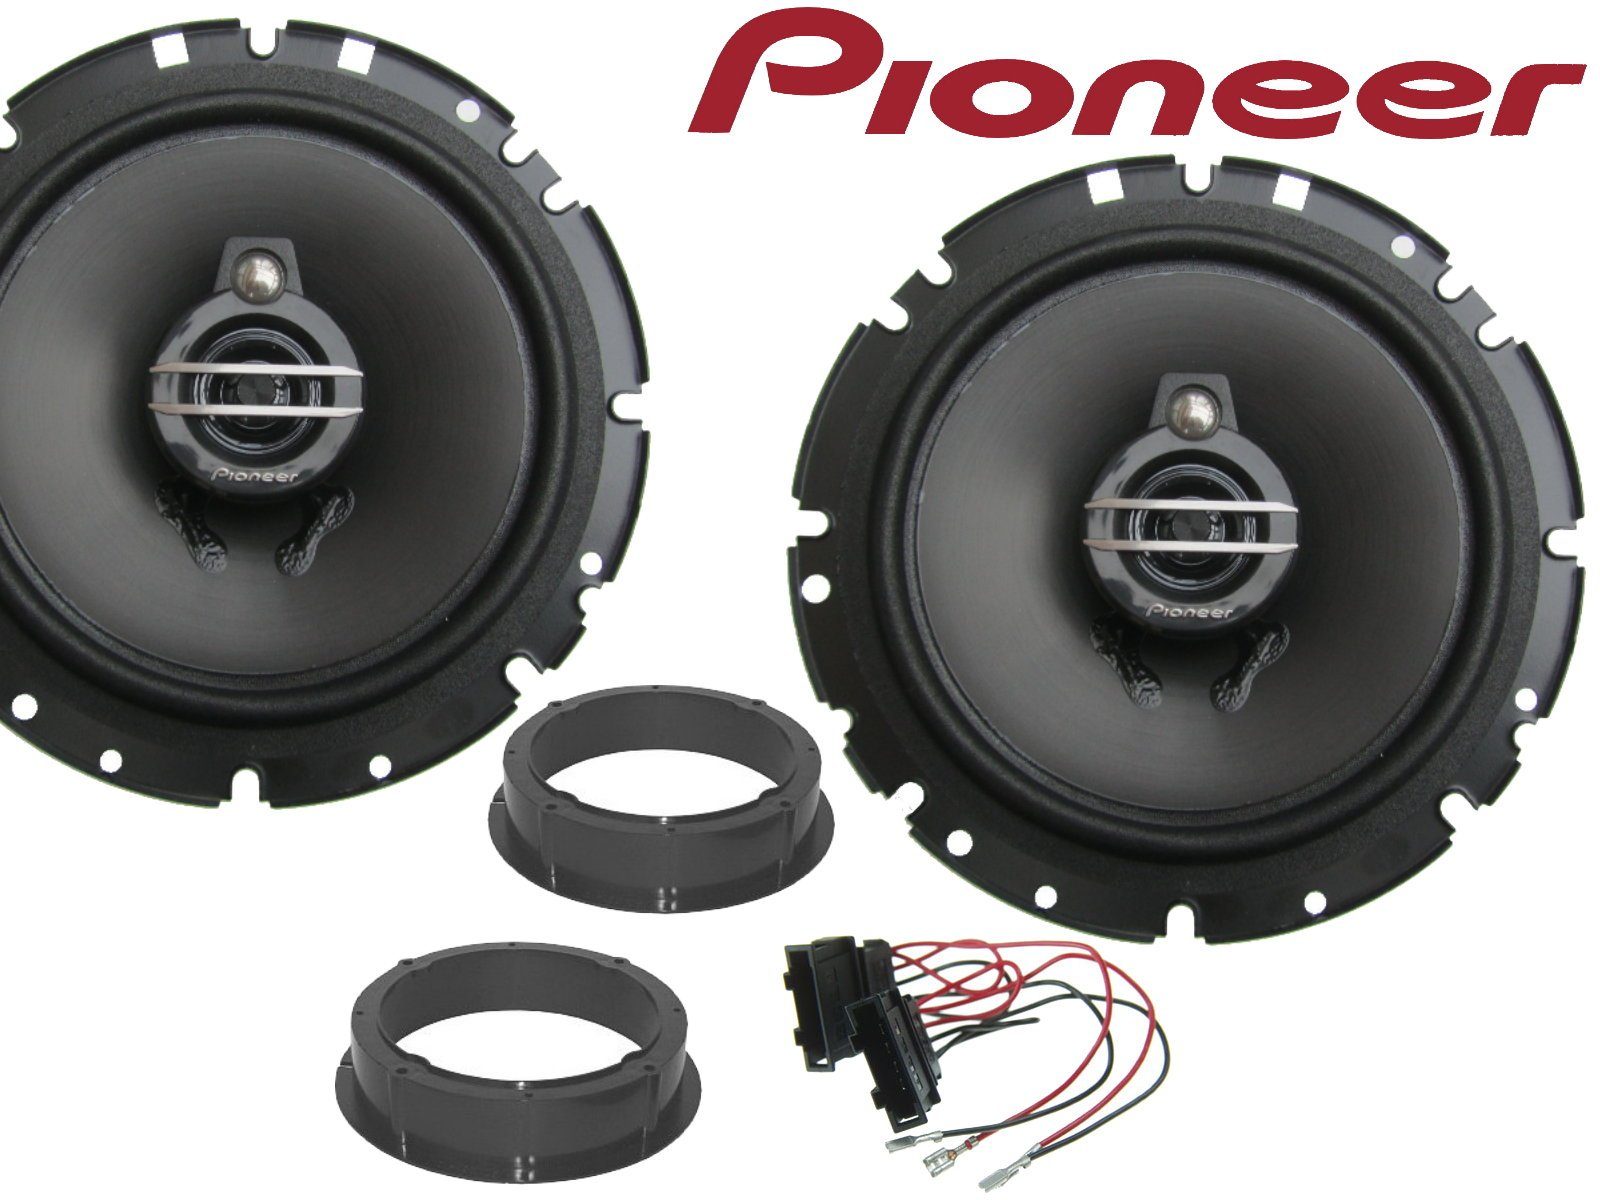 DSX Pioneer 3wege passend für Seat Arosa 1997 bis 2004 Auto-Lautsprecher (40 W) | Auto-Lautsprecher